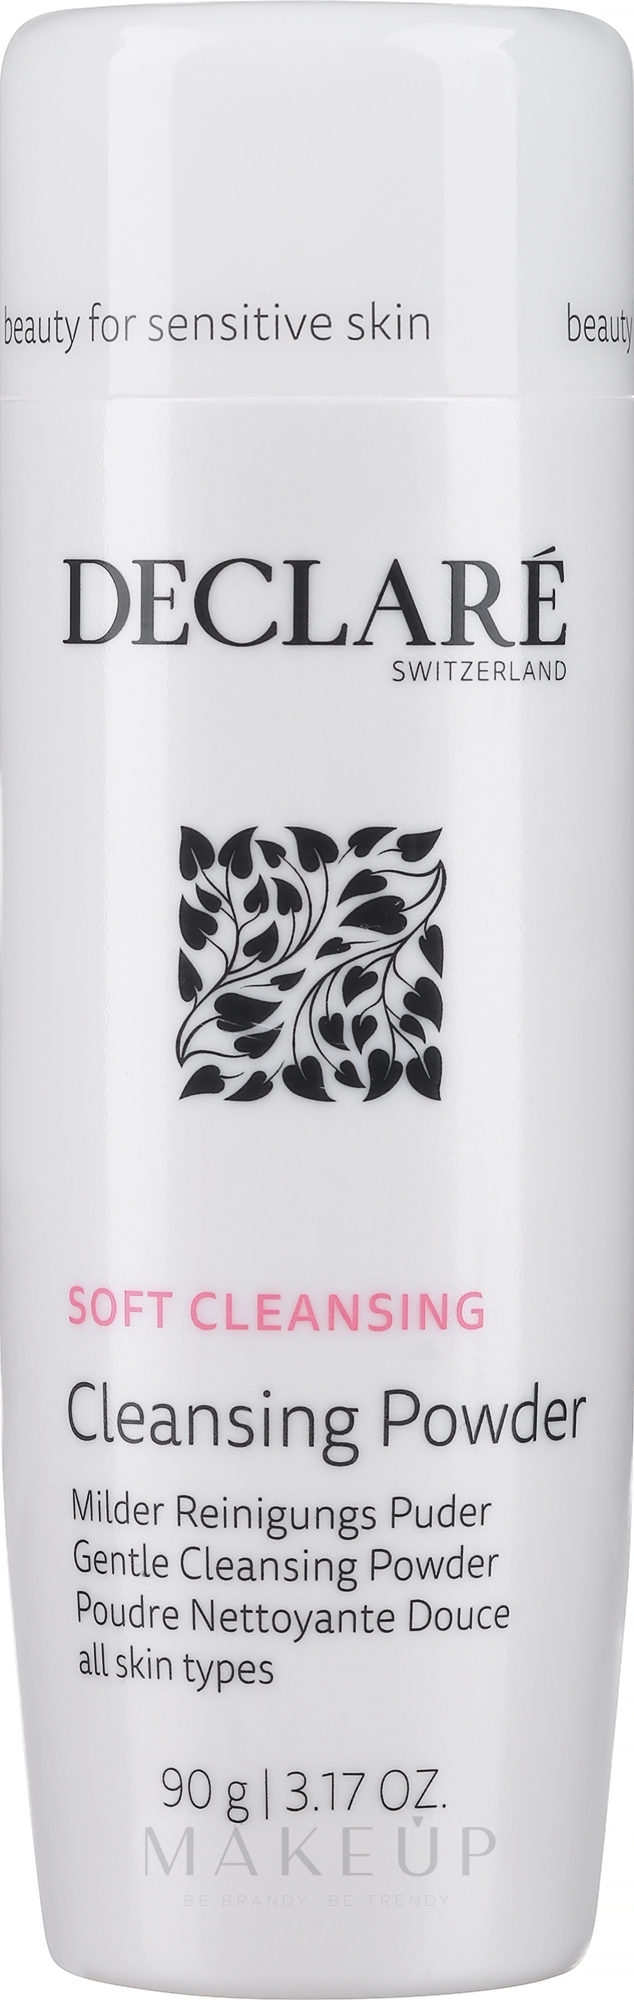 Declare Gentle Cleansing Powder - Milder Reinigungspuder für das Gesicht — Foto 90 g